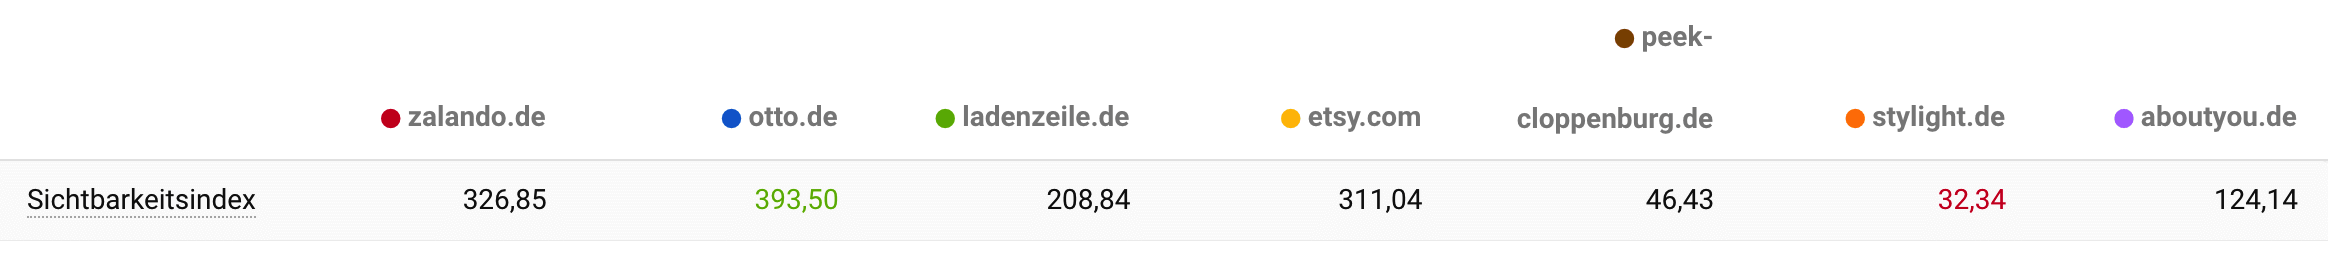 Der Sichtbarkeitsindex der sieben Domains gegenübergestellt. Otto.de hat mit 393,5 den höchsten, stylight.de mit 32,34 den niedrigsten Wert.